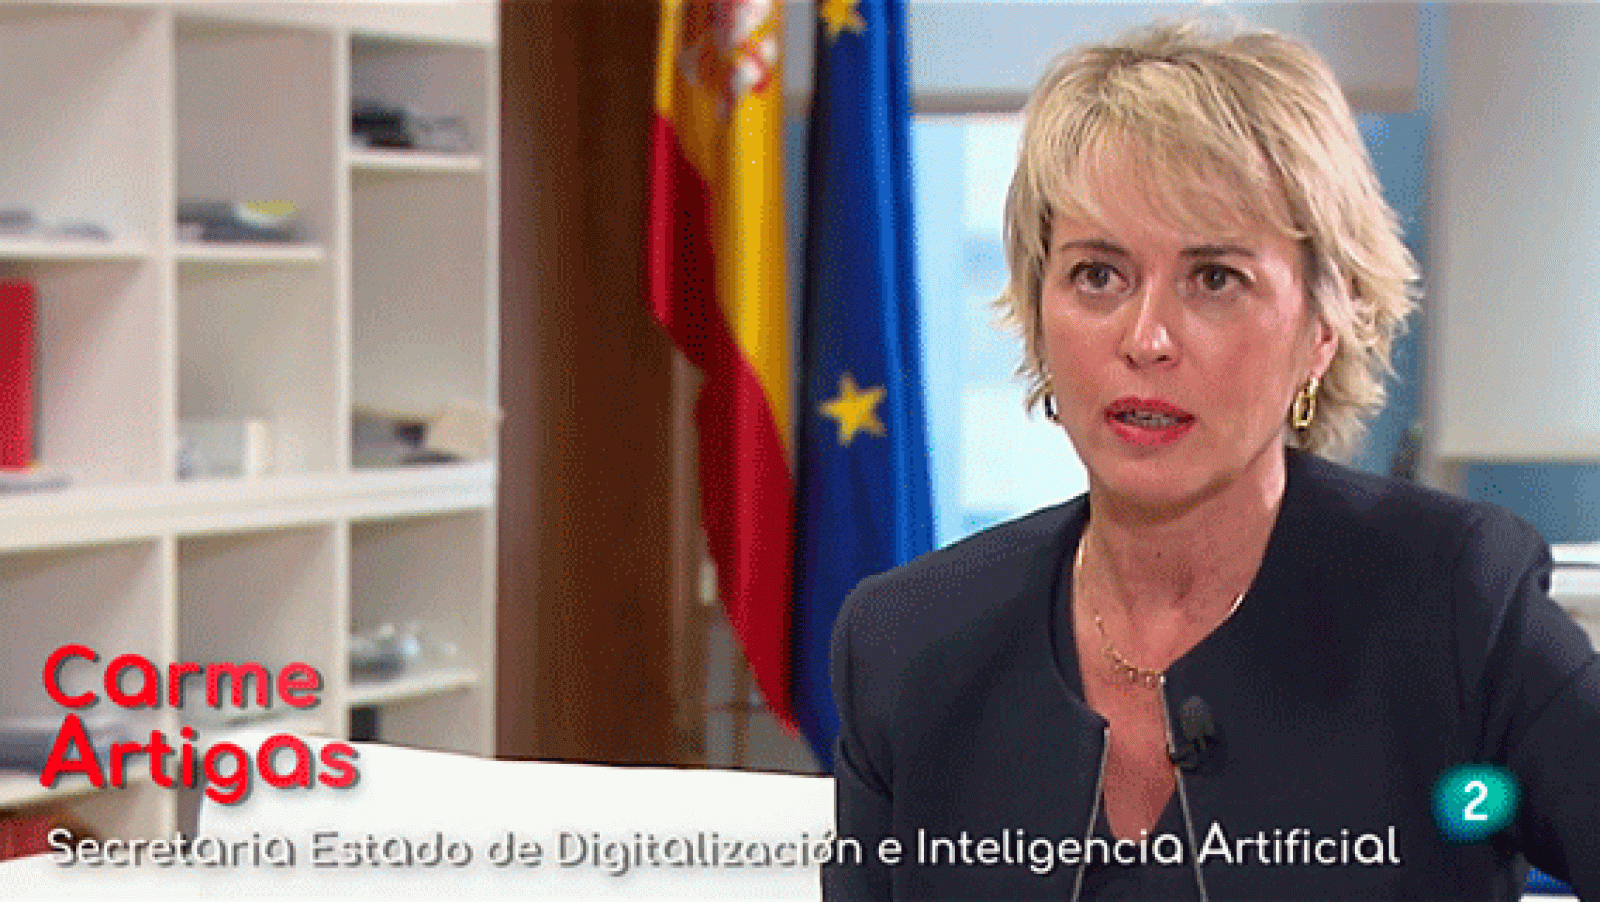 La aventura del saber - España digital: La tecnología en positivo